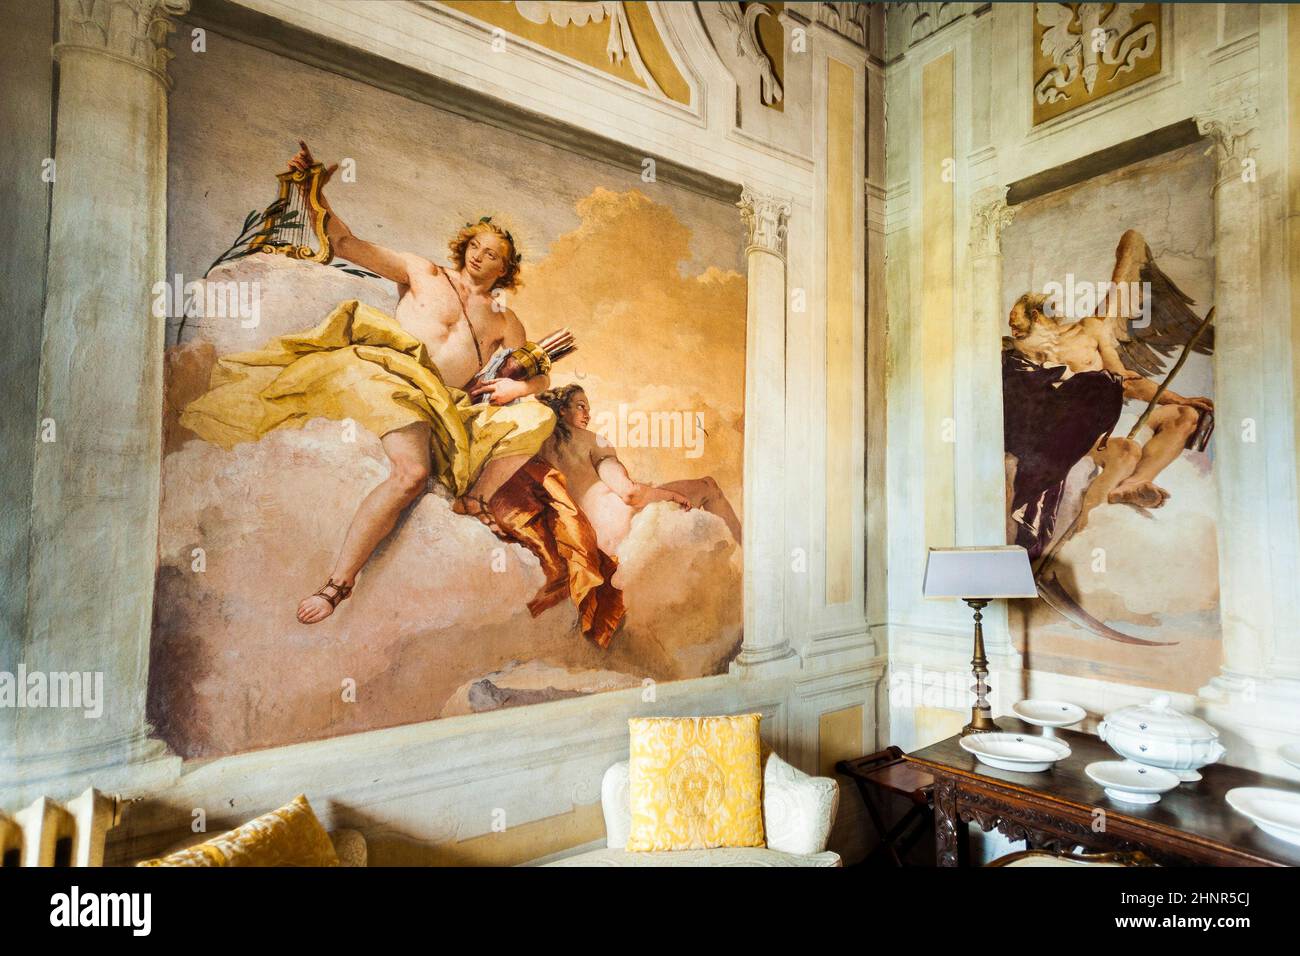 frescos from Giovanni Battista Tiepolo in Vicenza Stock Photo